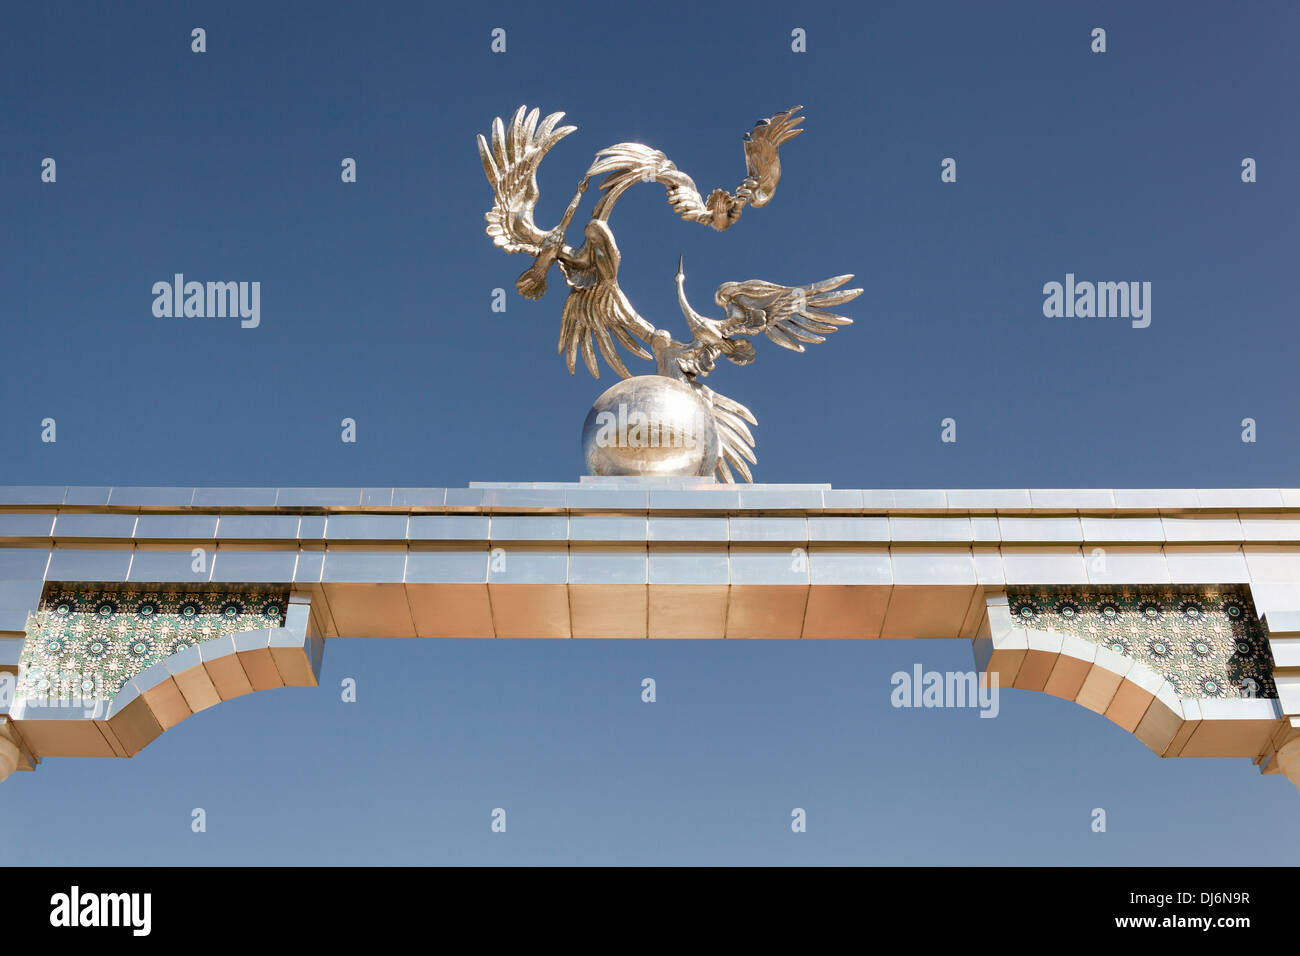 Sculpture of storks and cranes on Ezgulik Independence Arch, Independence Square, Mustakillik Maydoni, Tashkent, Uzbekistan Stock Photo